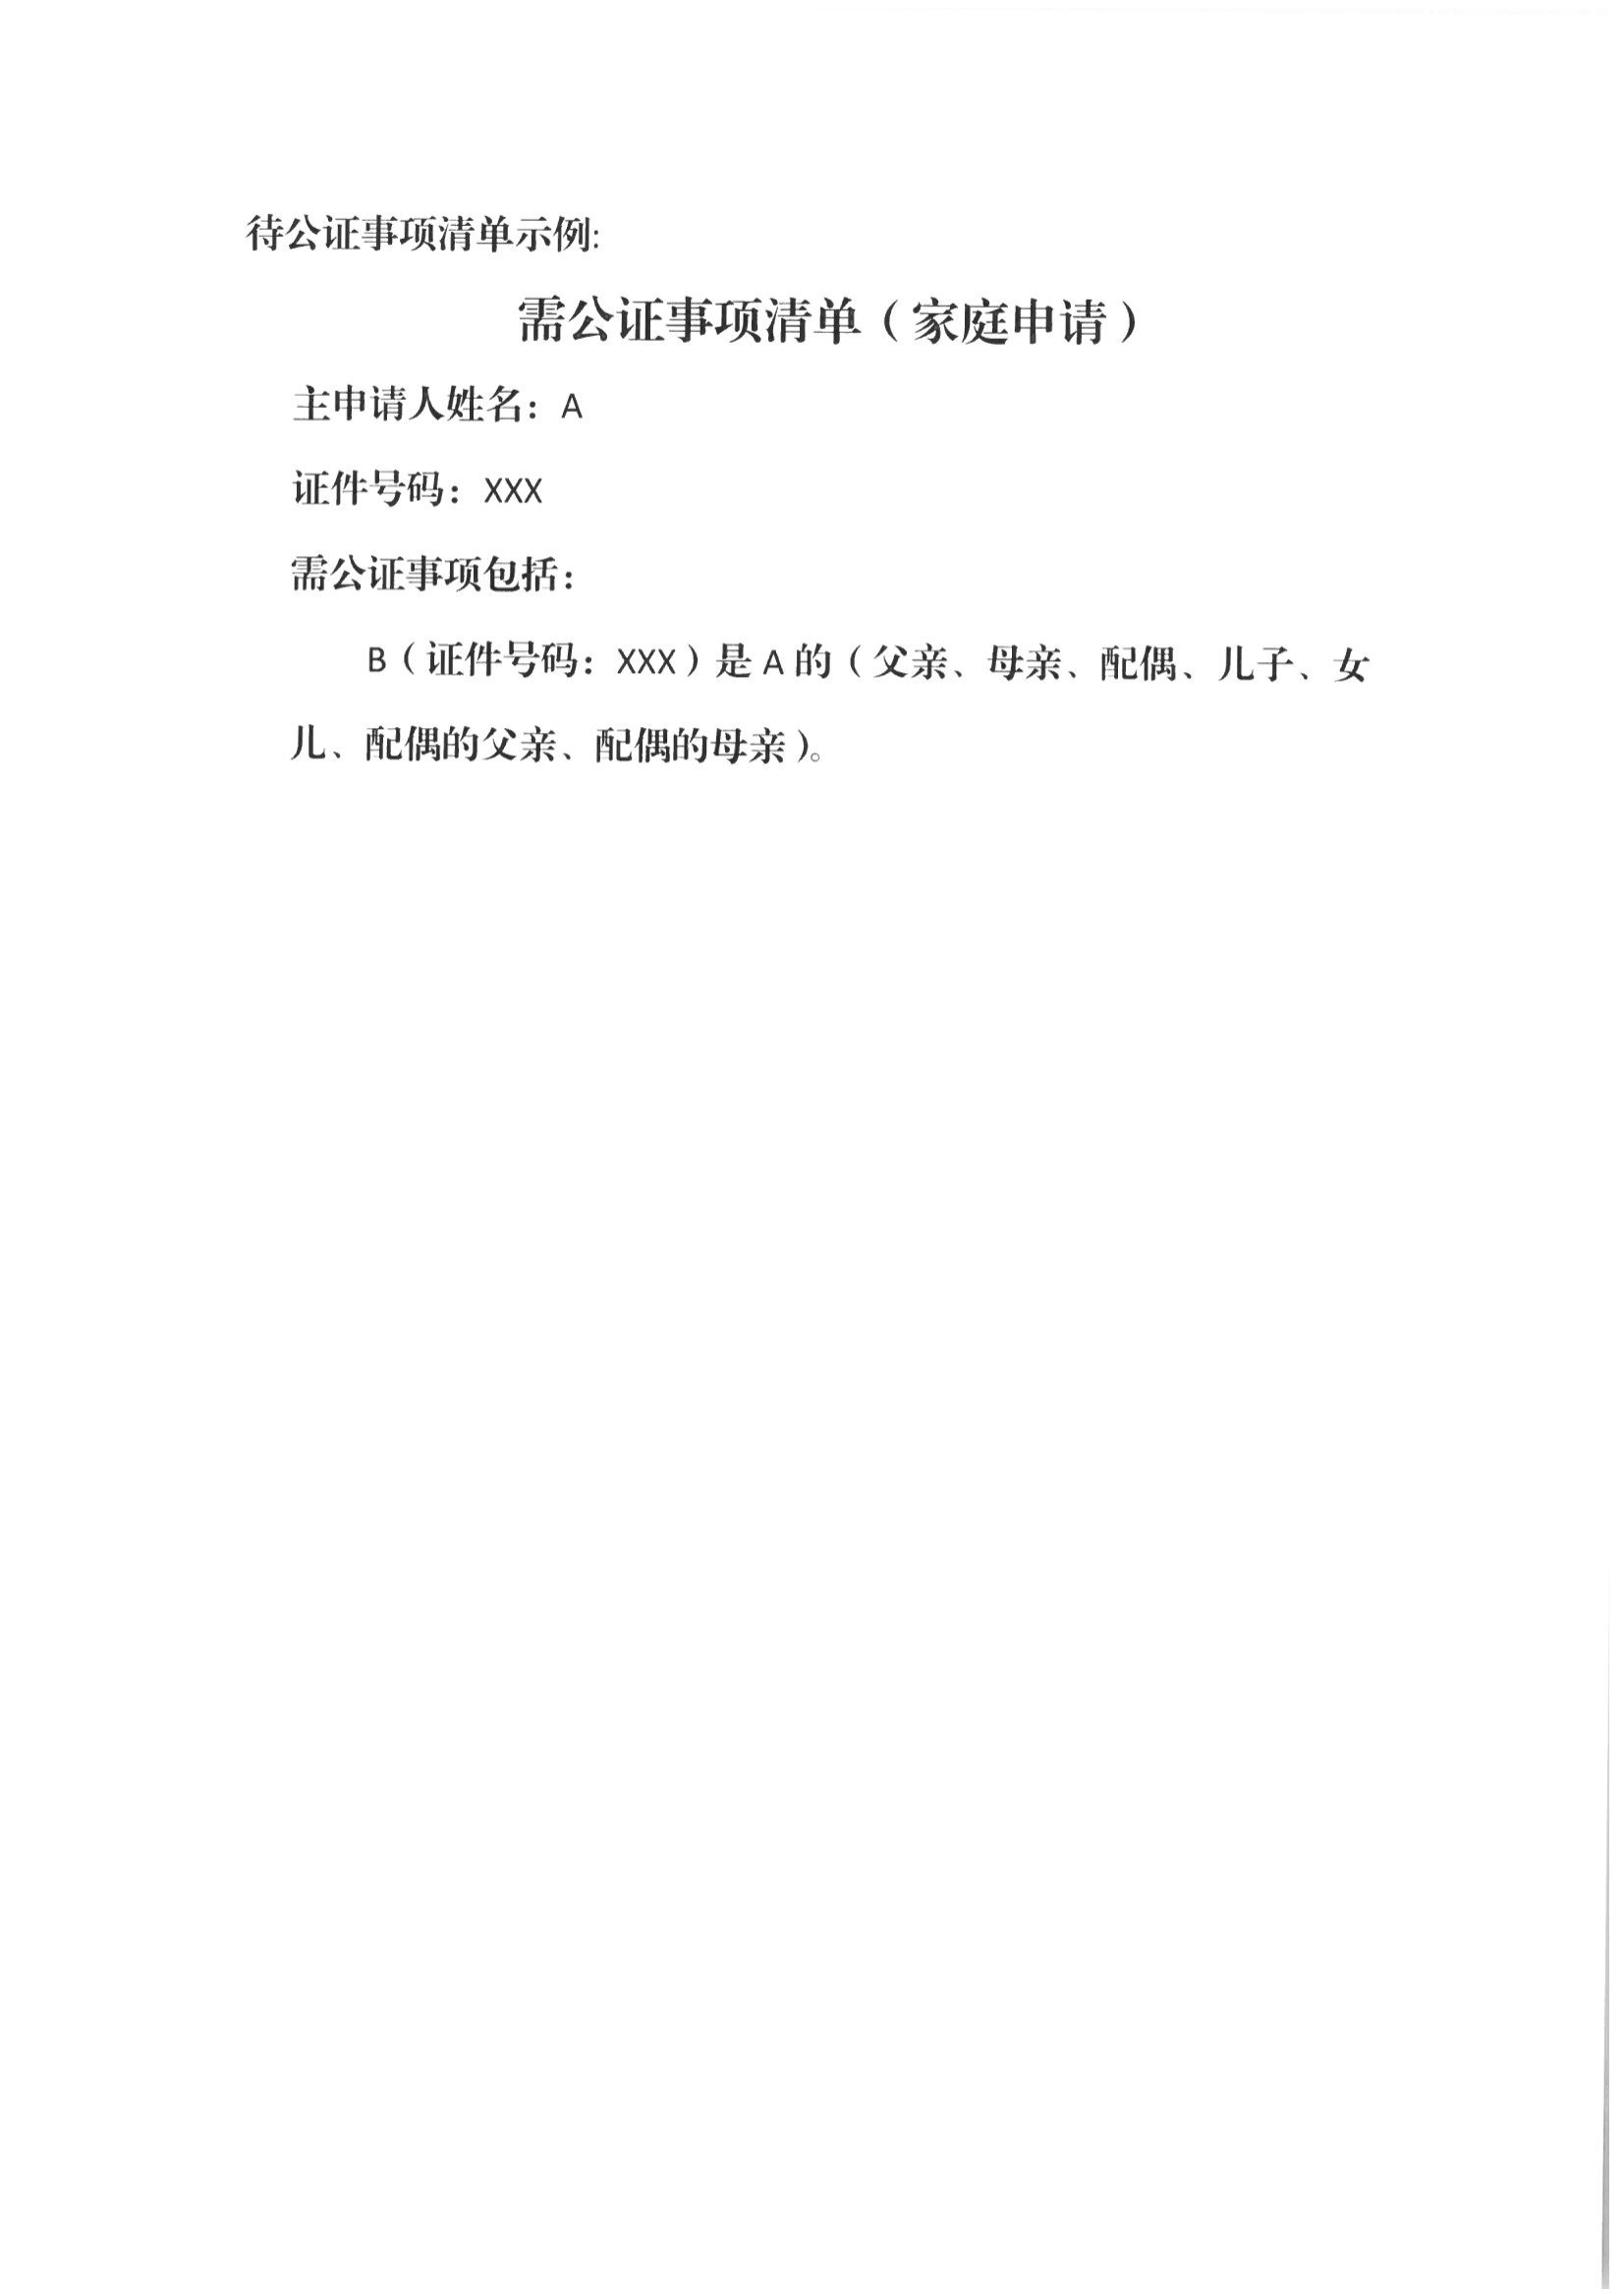 京公协字【2021】21号 北京市公证协会规范执业指引【第13号】_48